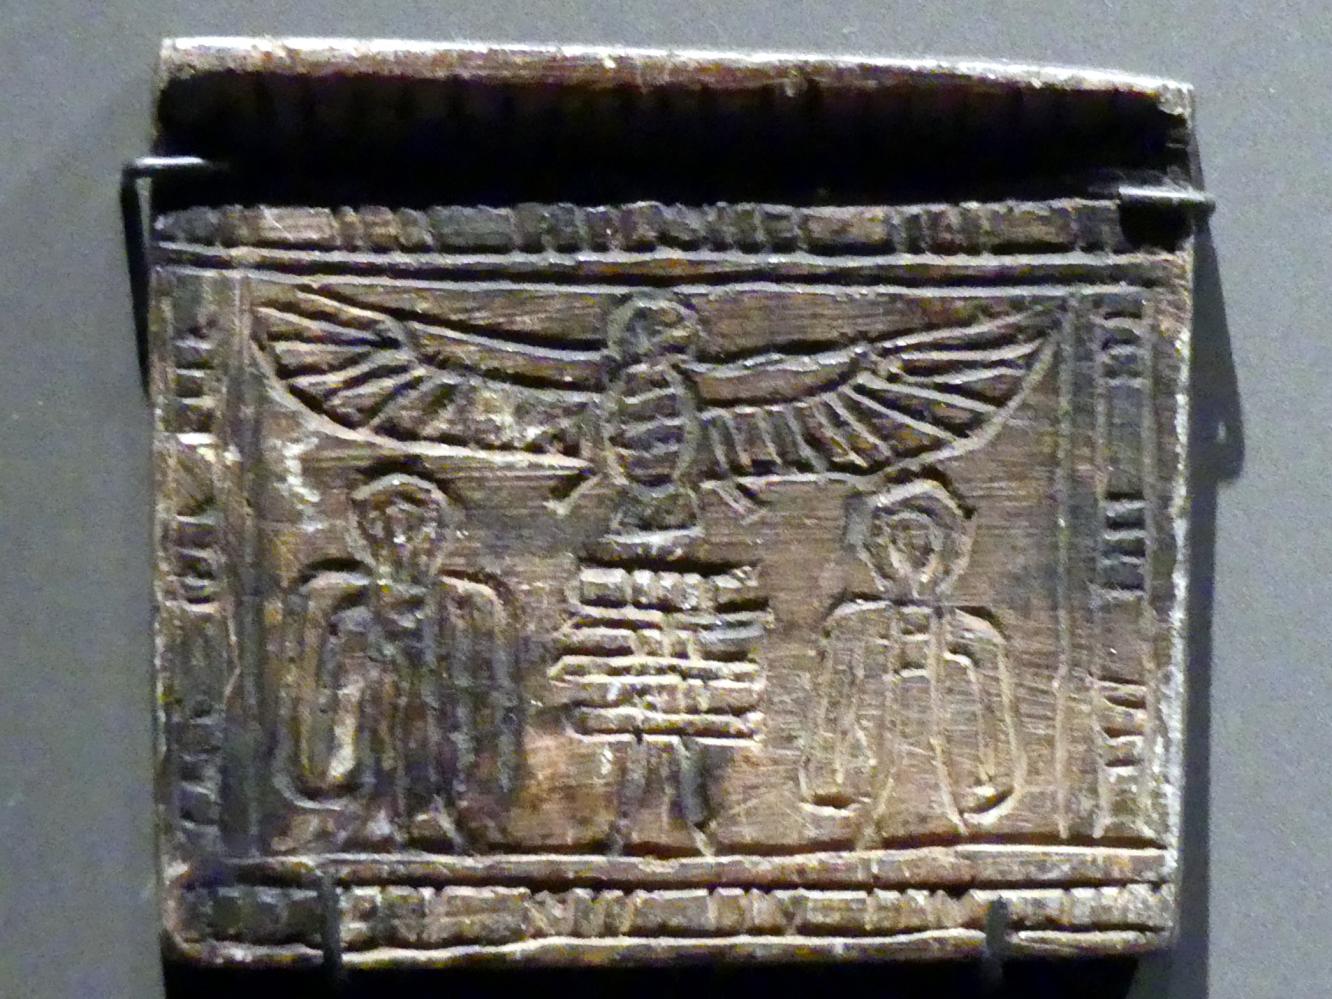 Pektoral mit Ba-Vogel und Djed-Pfeilern, Neues Reich, 953 - 887 v. Chr., 1550 - 1100 v. Chr., Bild 1/2